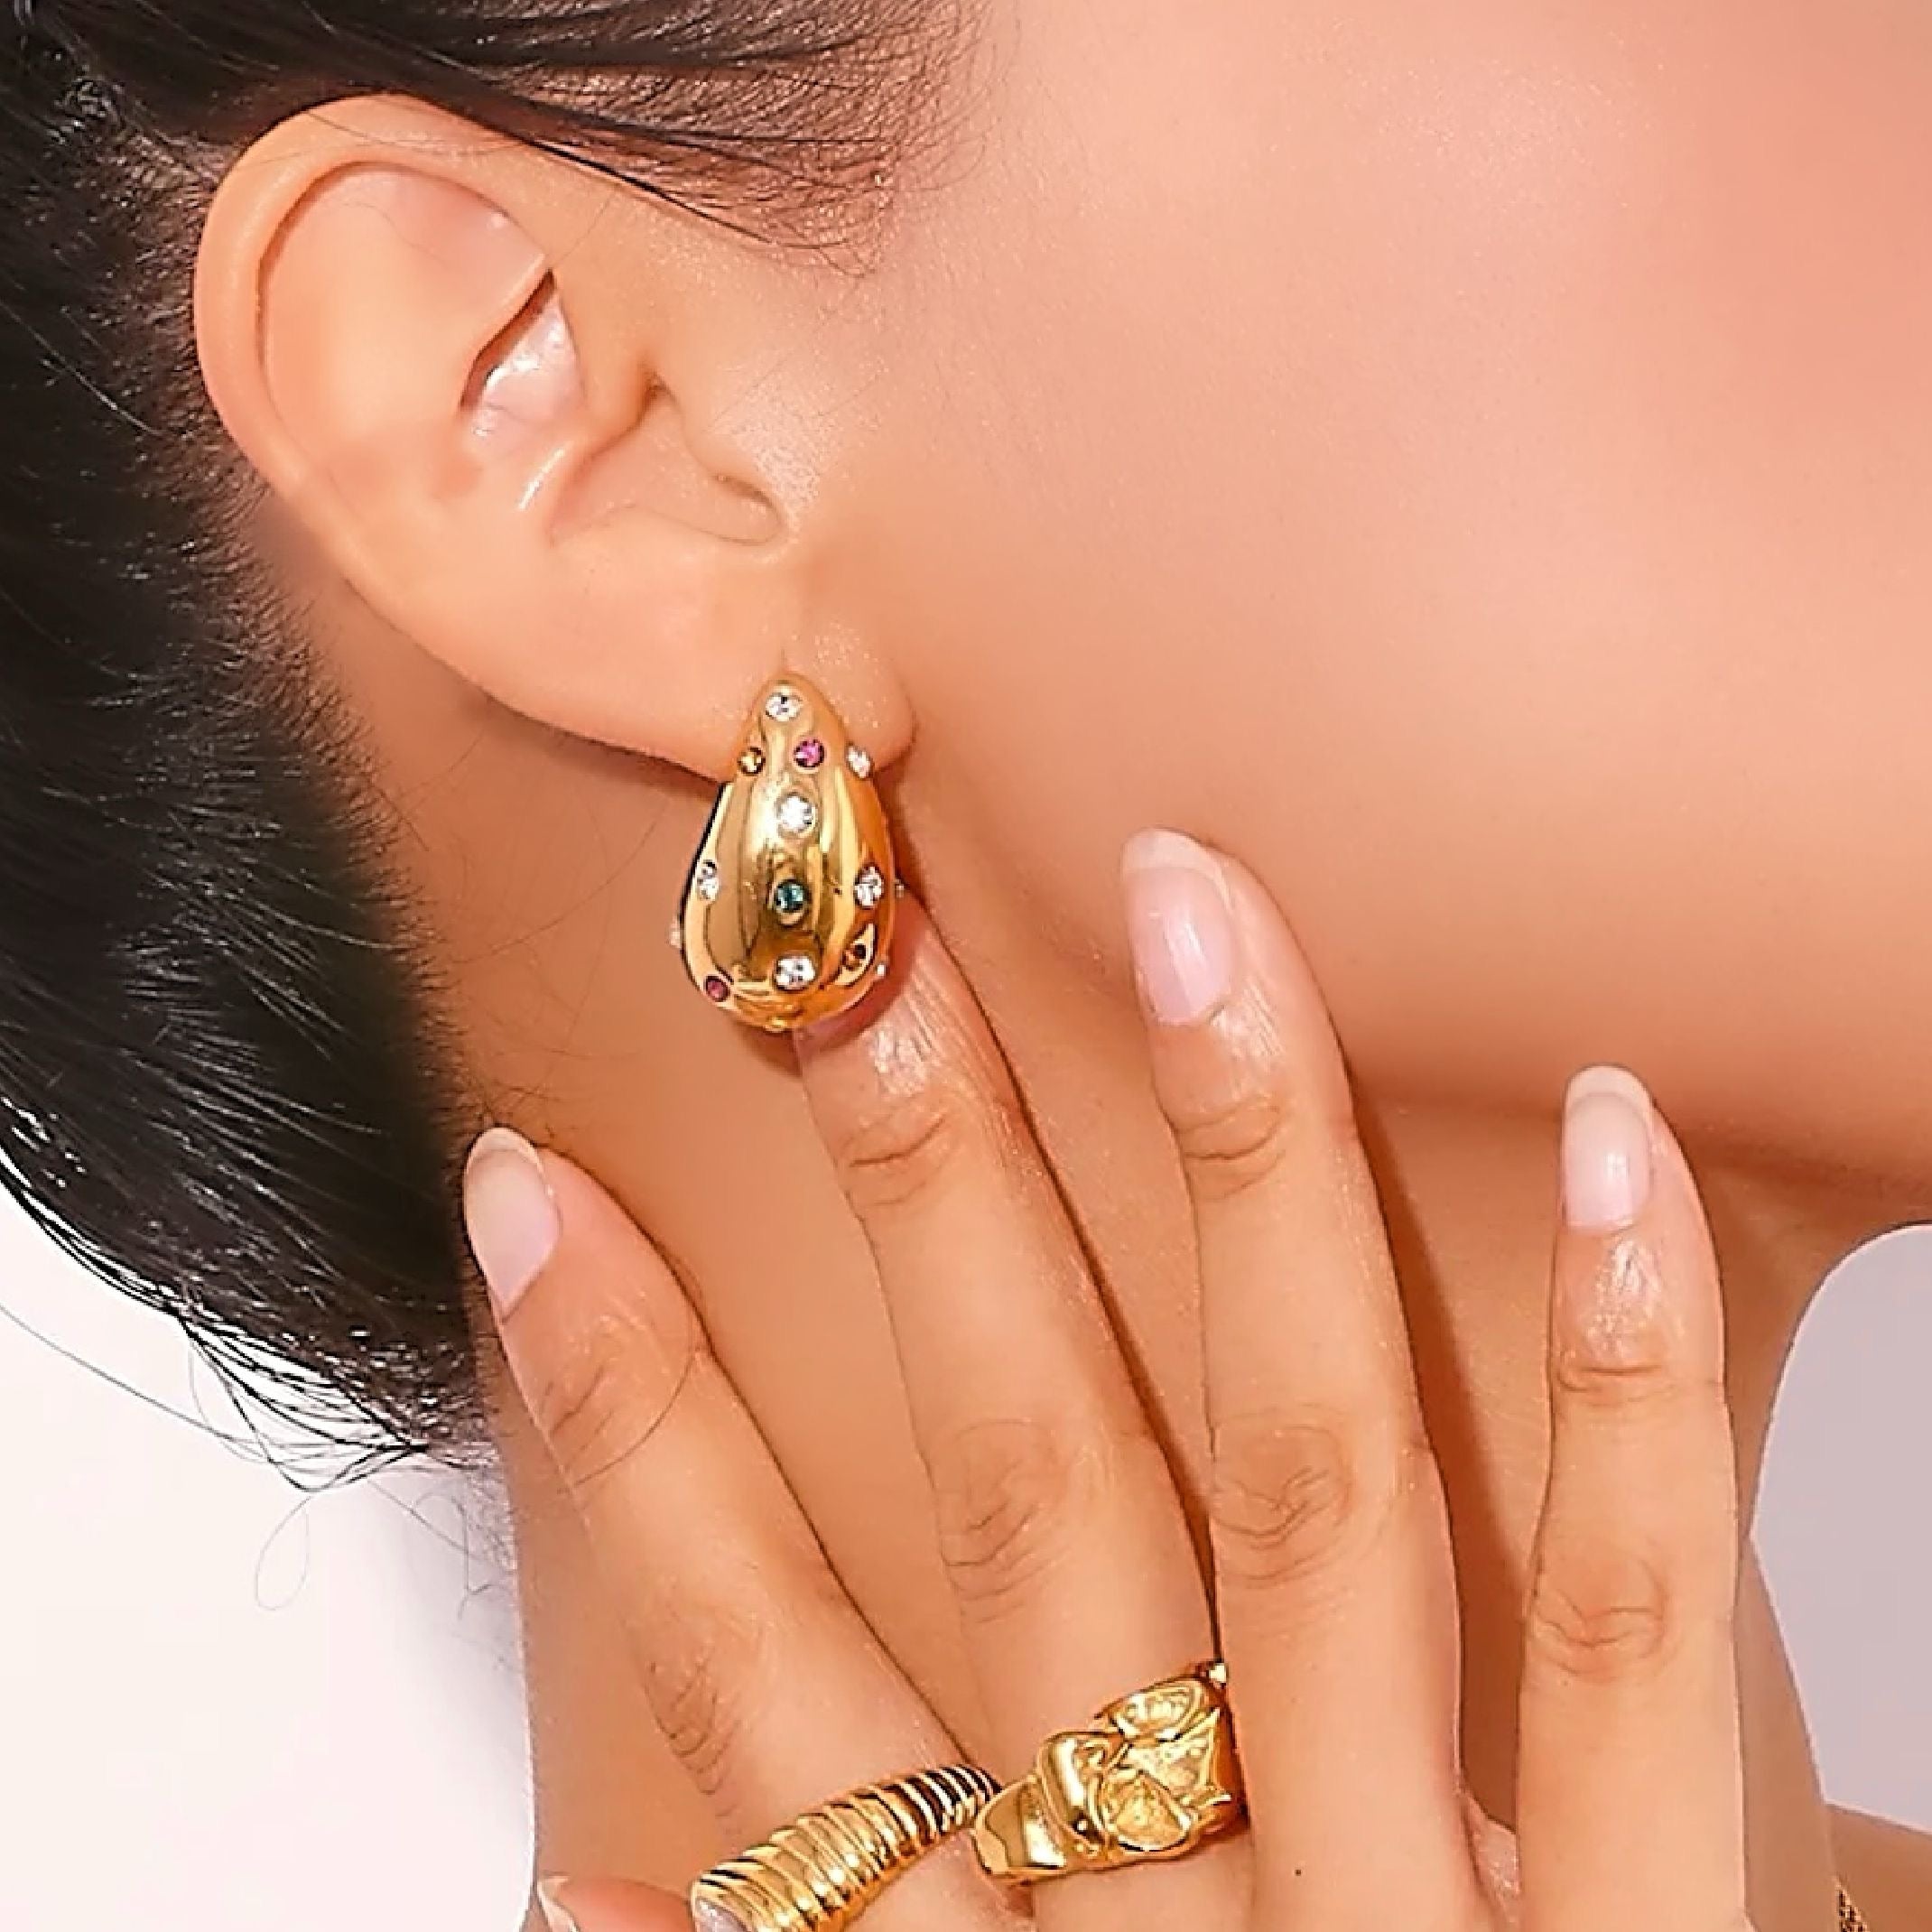 Gold dome hoop earrings 